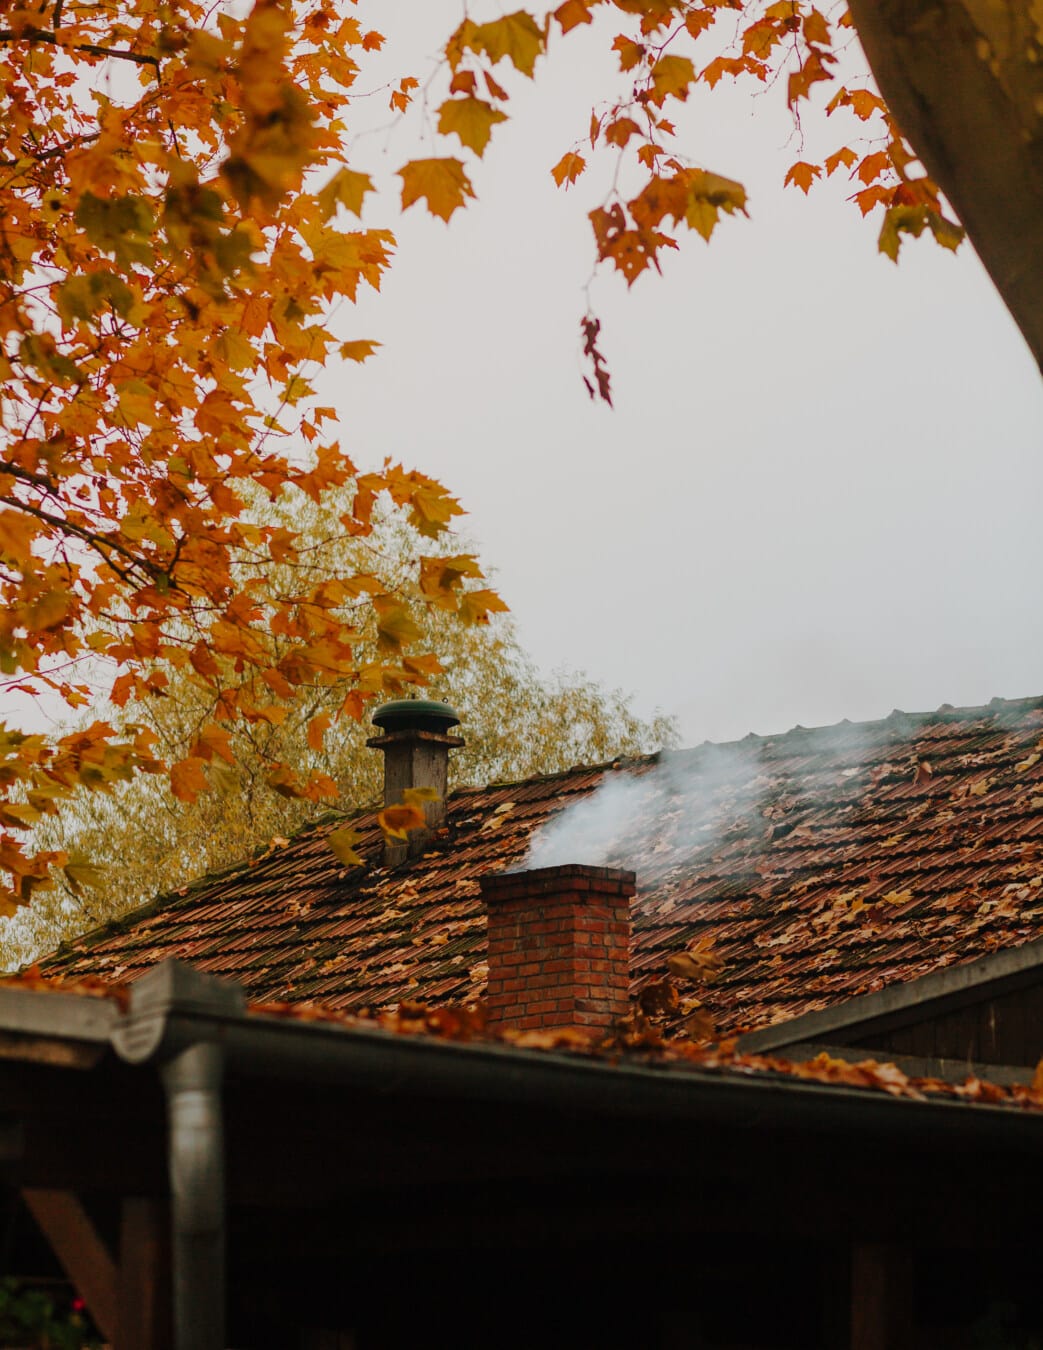 吸烟, 烟囱, 秋天季节, 屋顶, 屋顶, 冷, 天气, 树, 房子, 叶